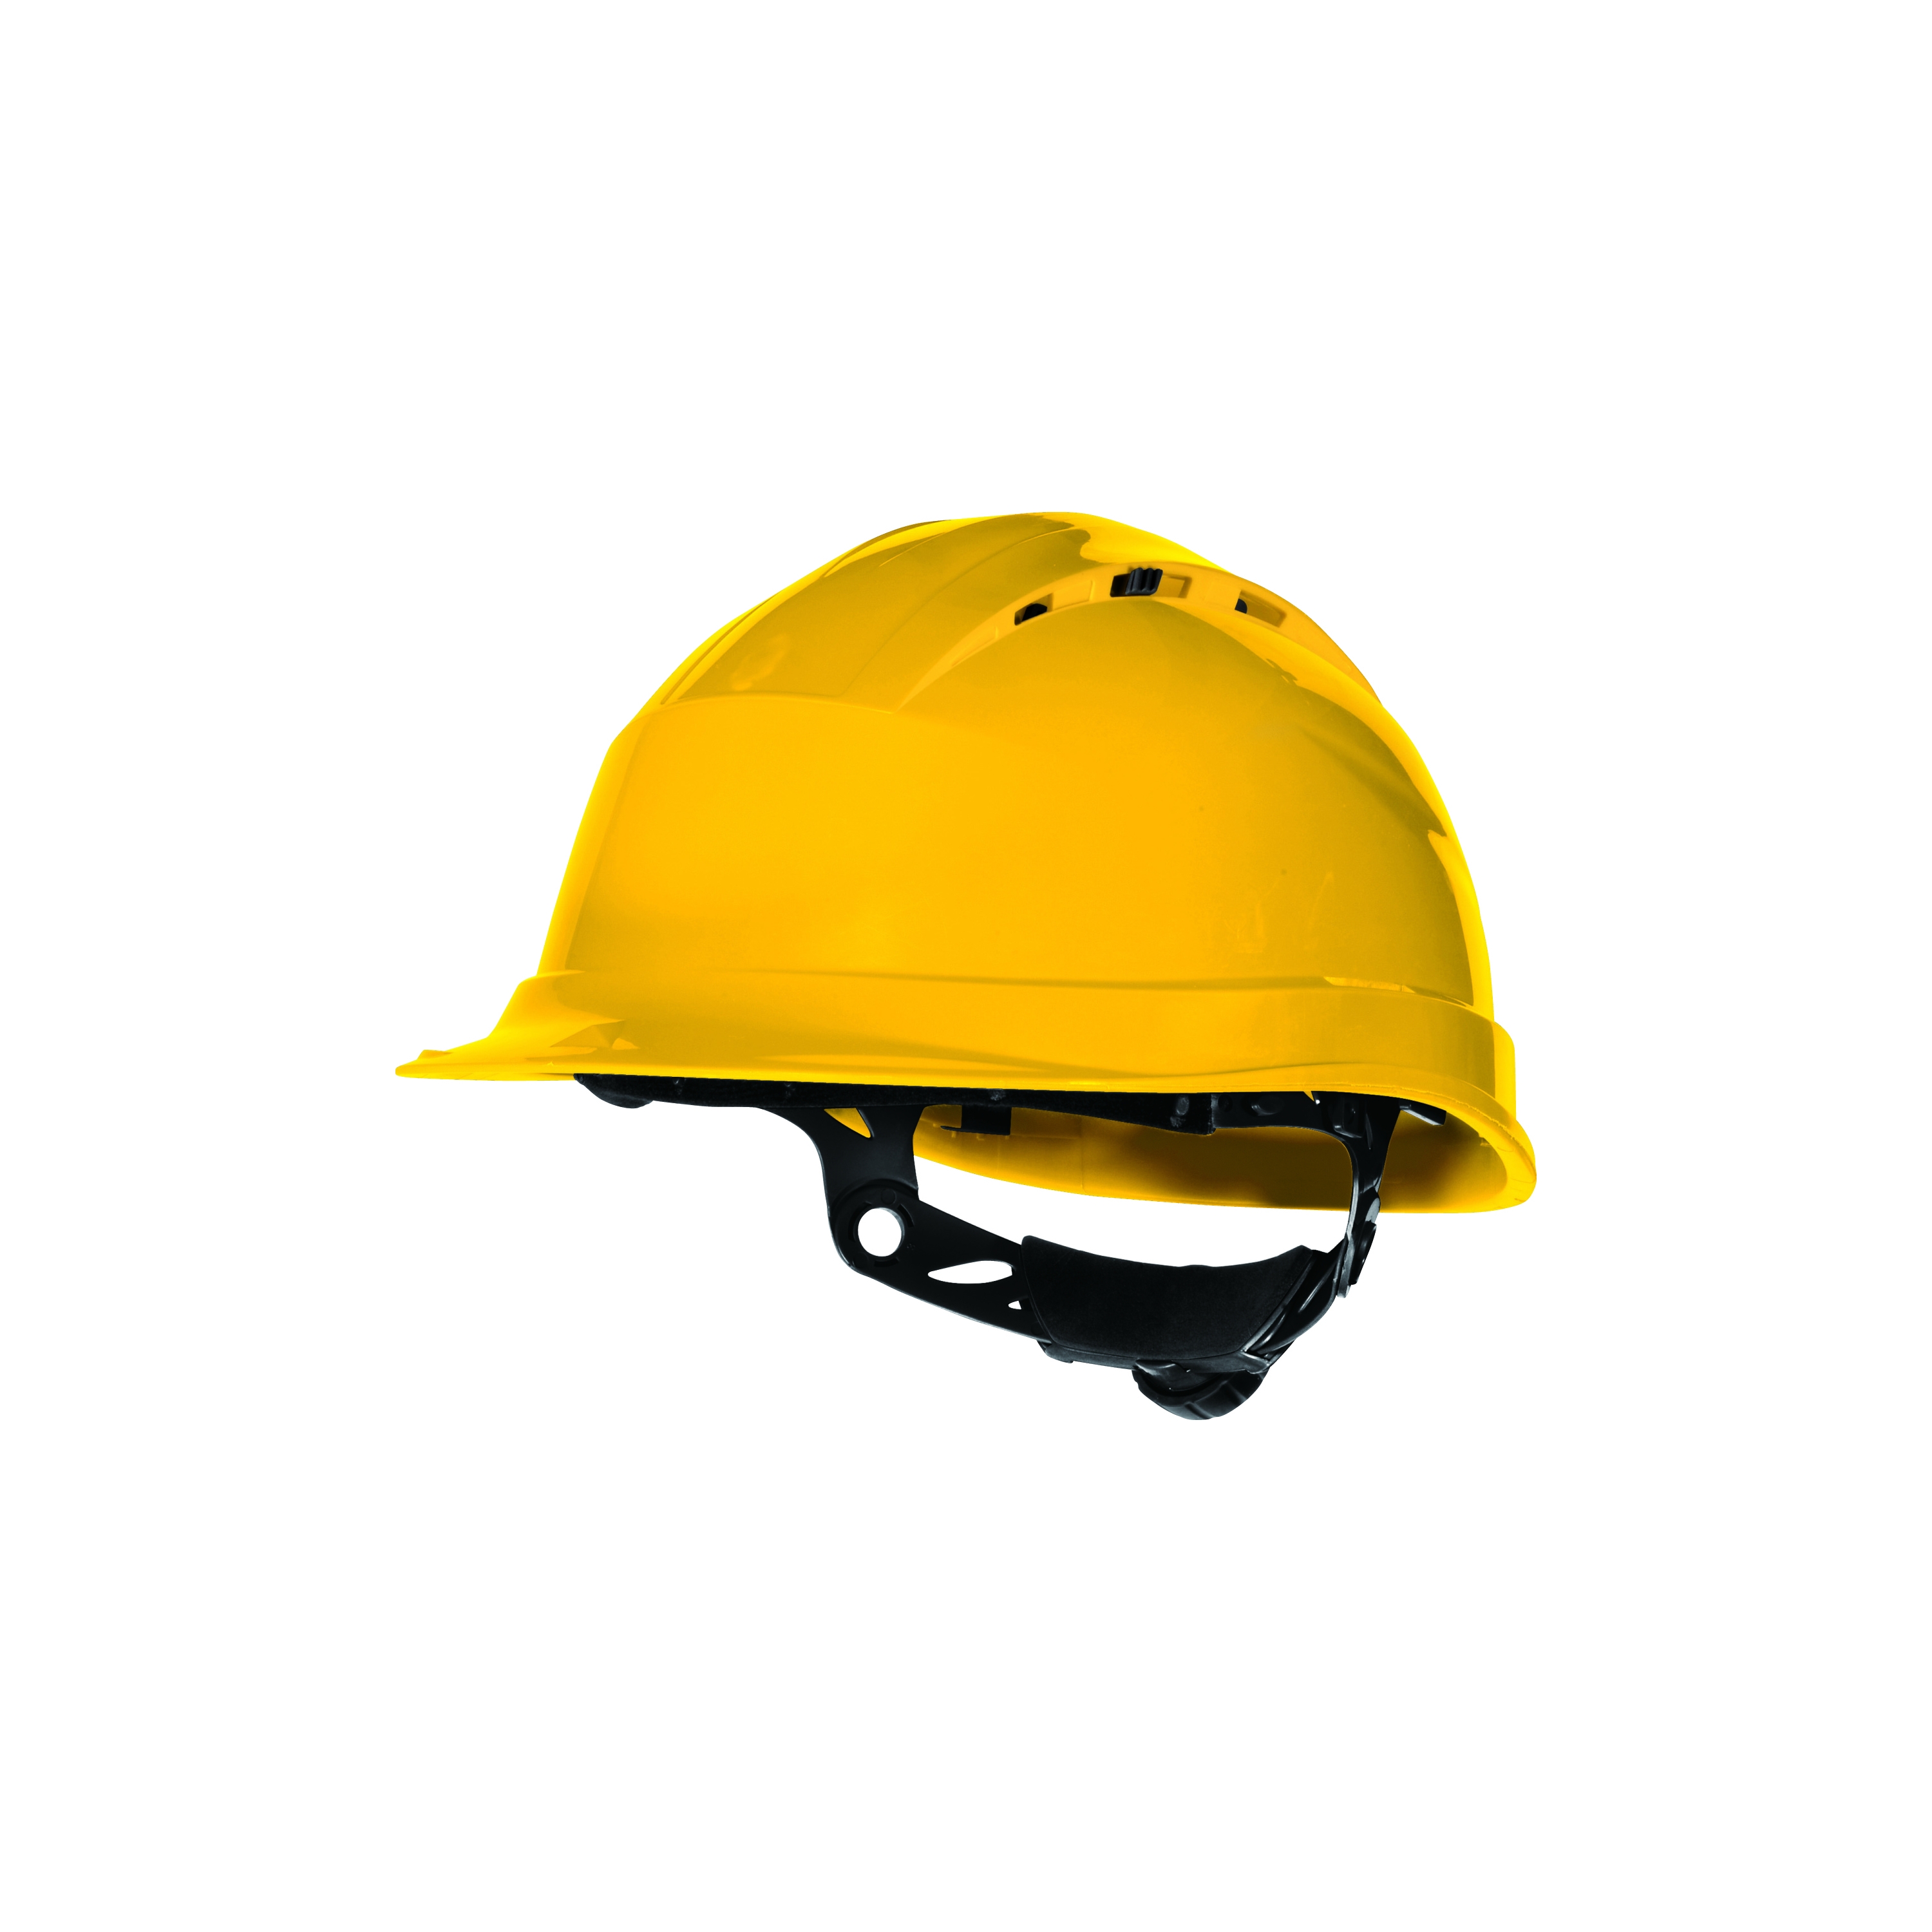 Tout savoir sur les casques de chantier - Lepont Equipements